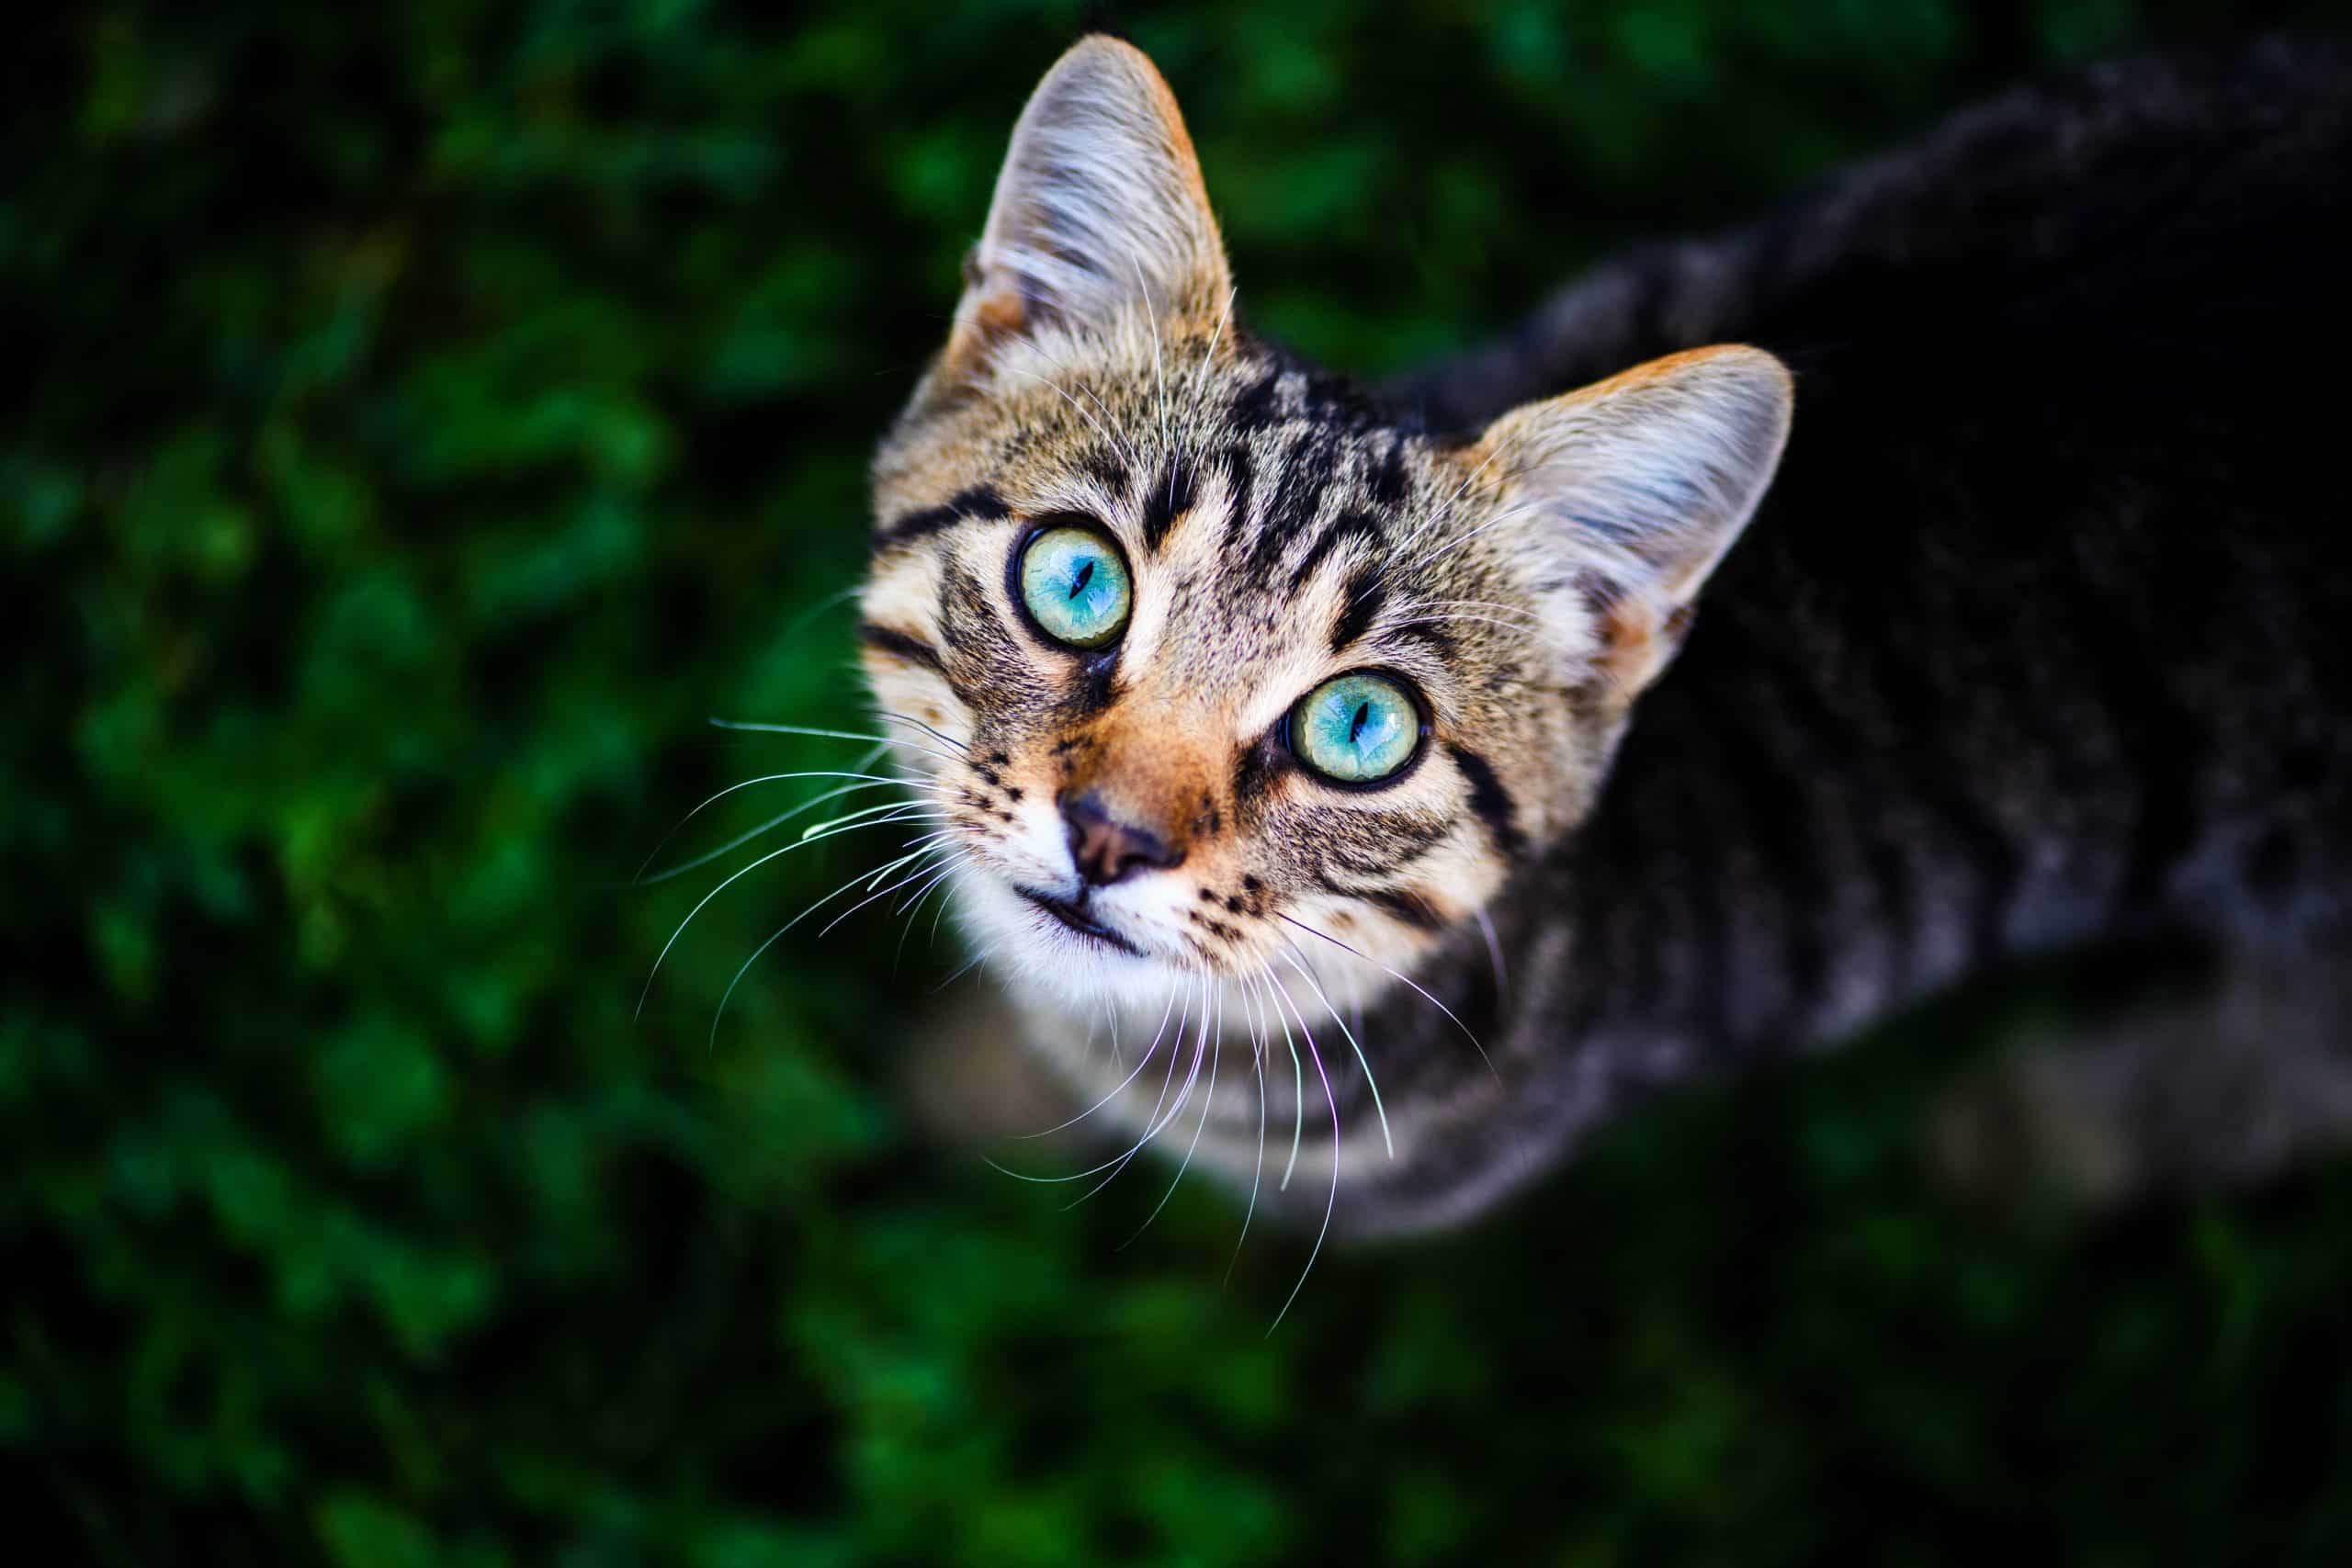 cat with amazing eyes